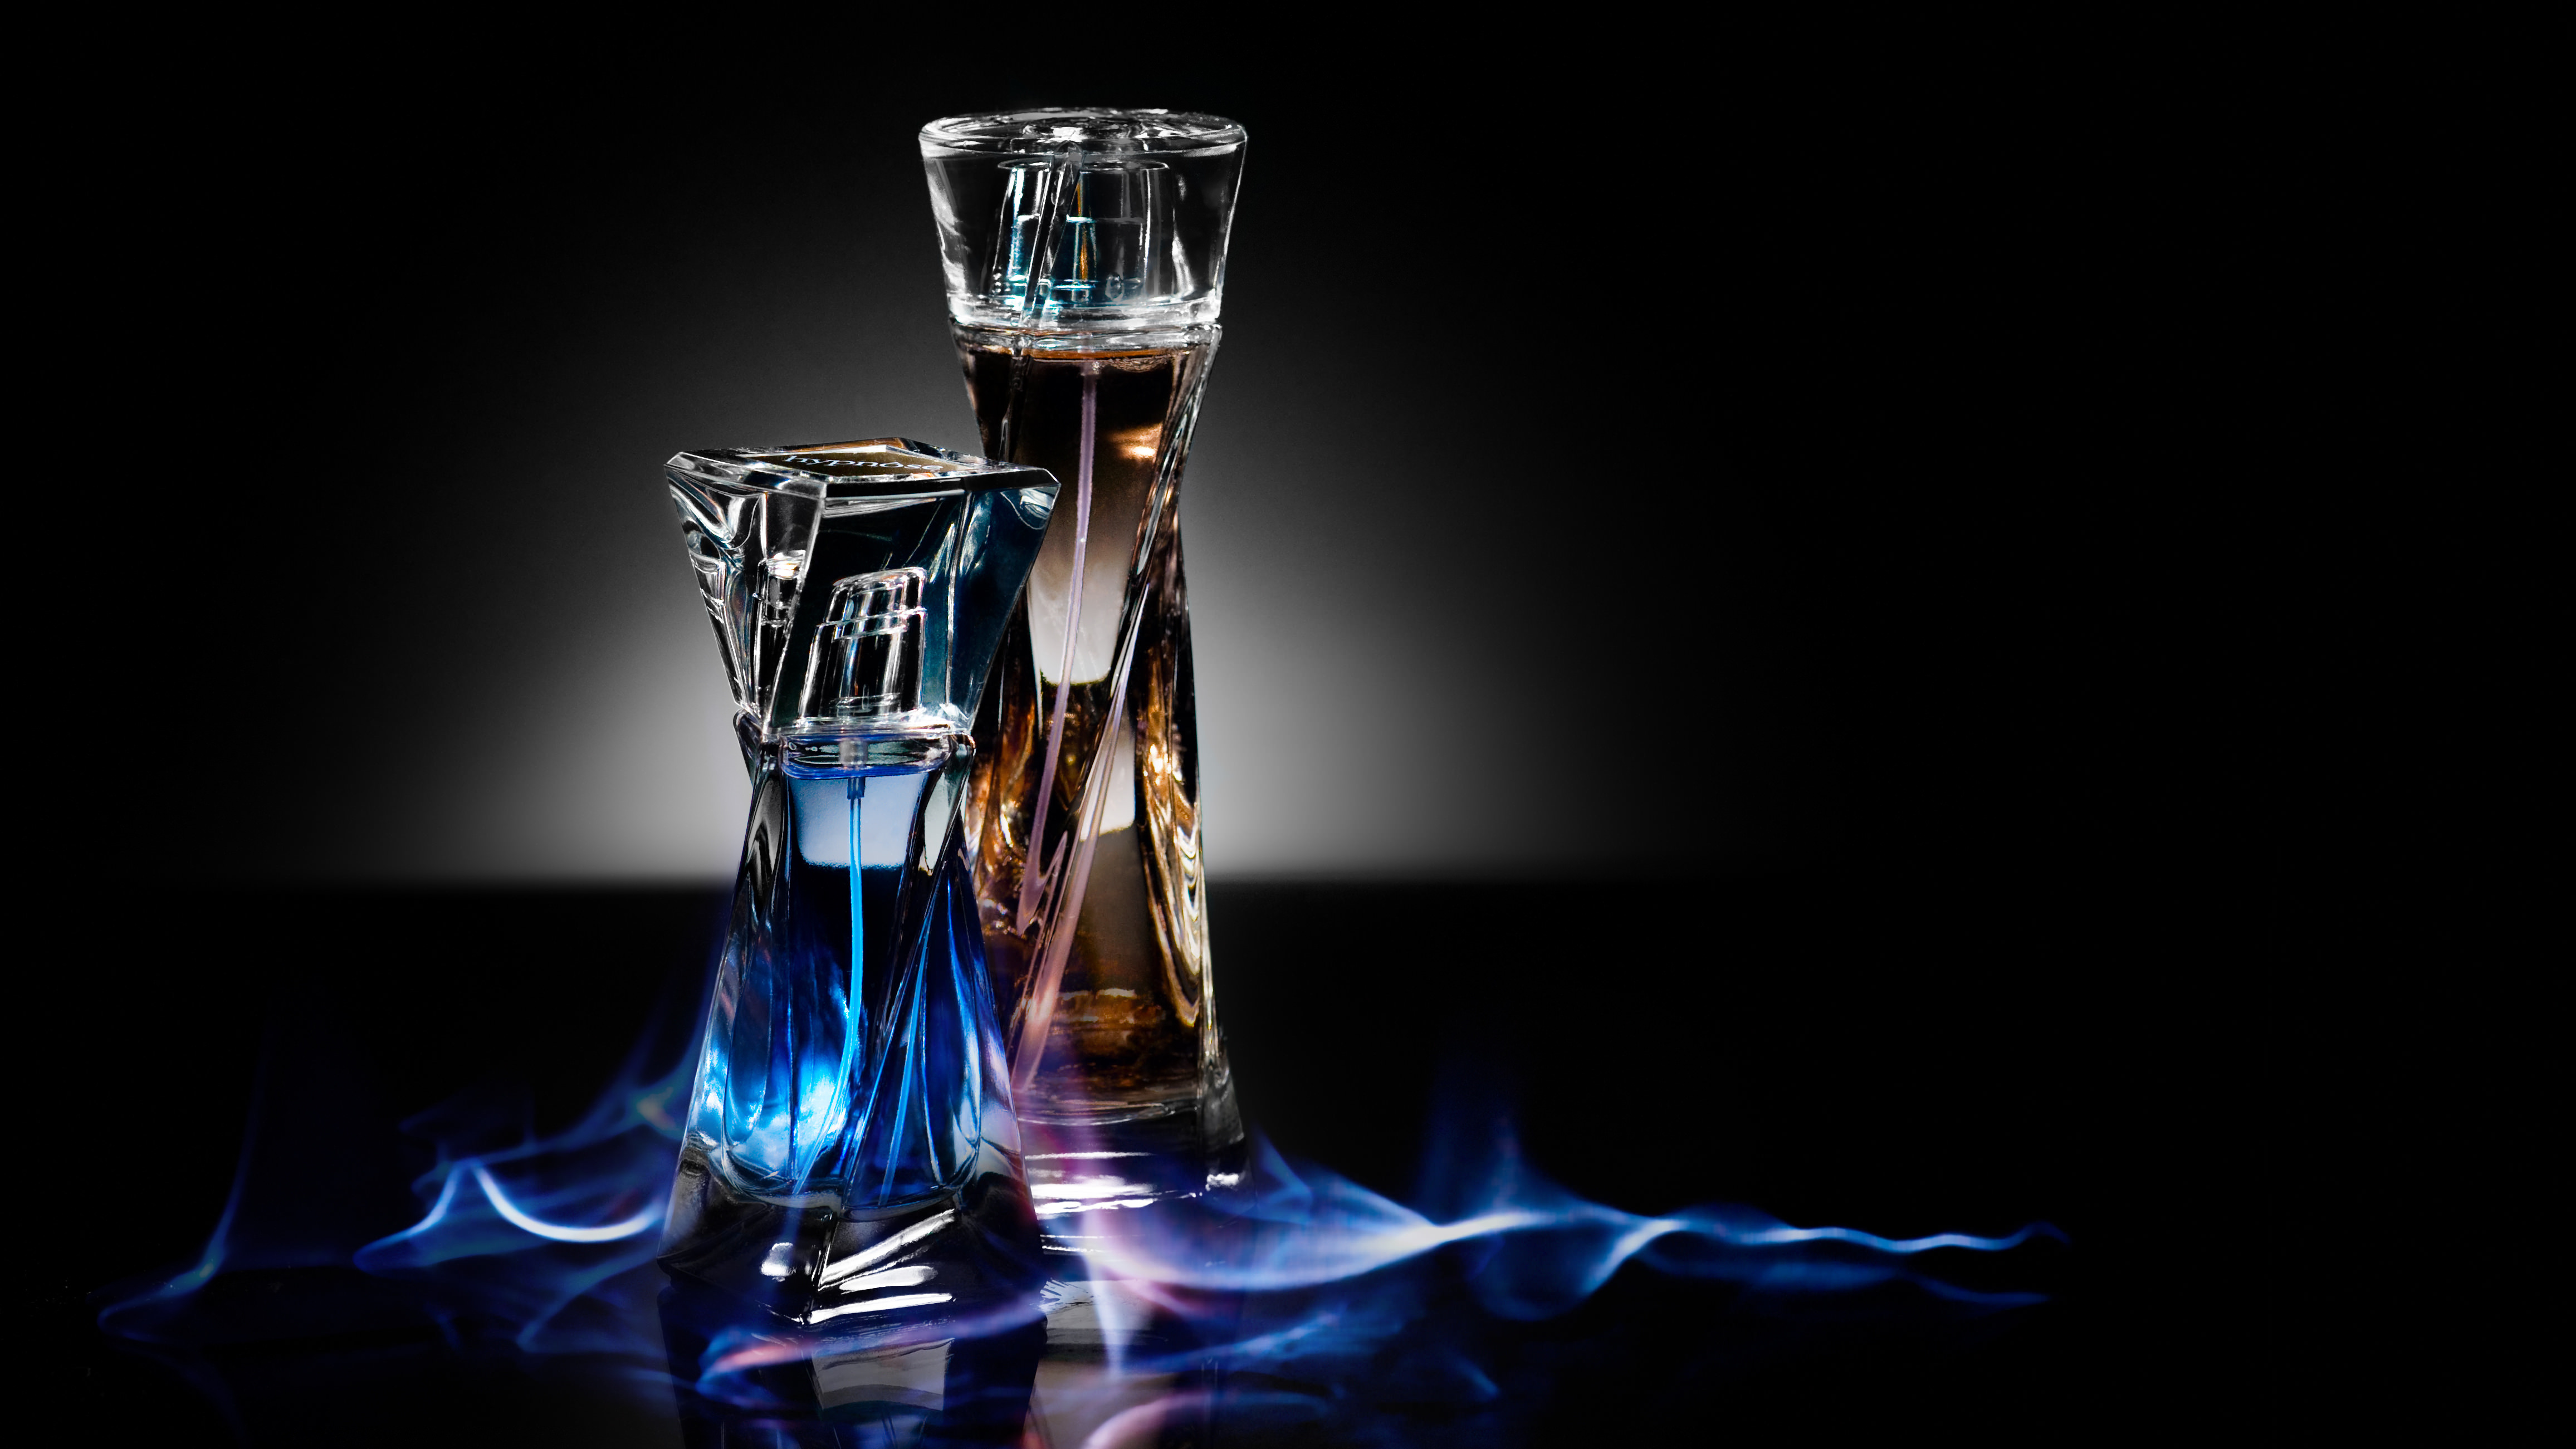 parfüm tapete,blau,getränk,glas,alkohol,stillleben fotografie